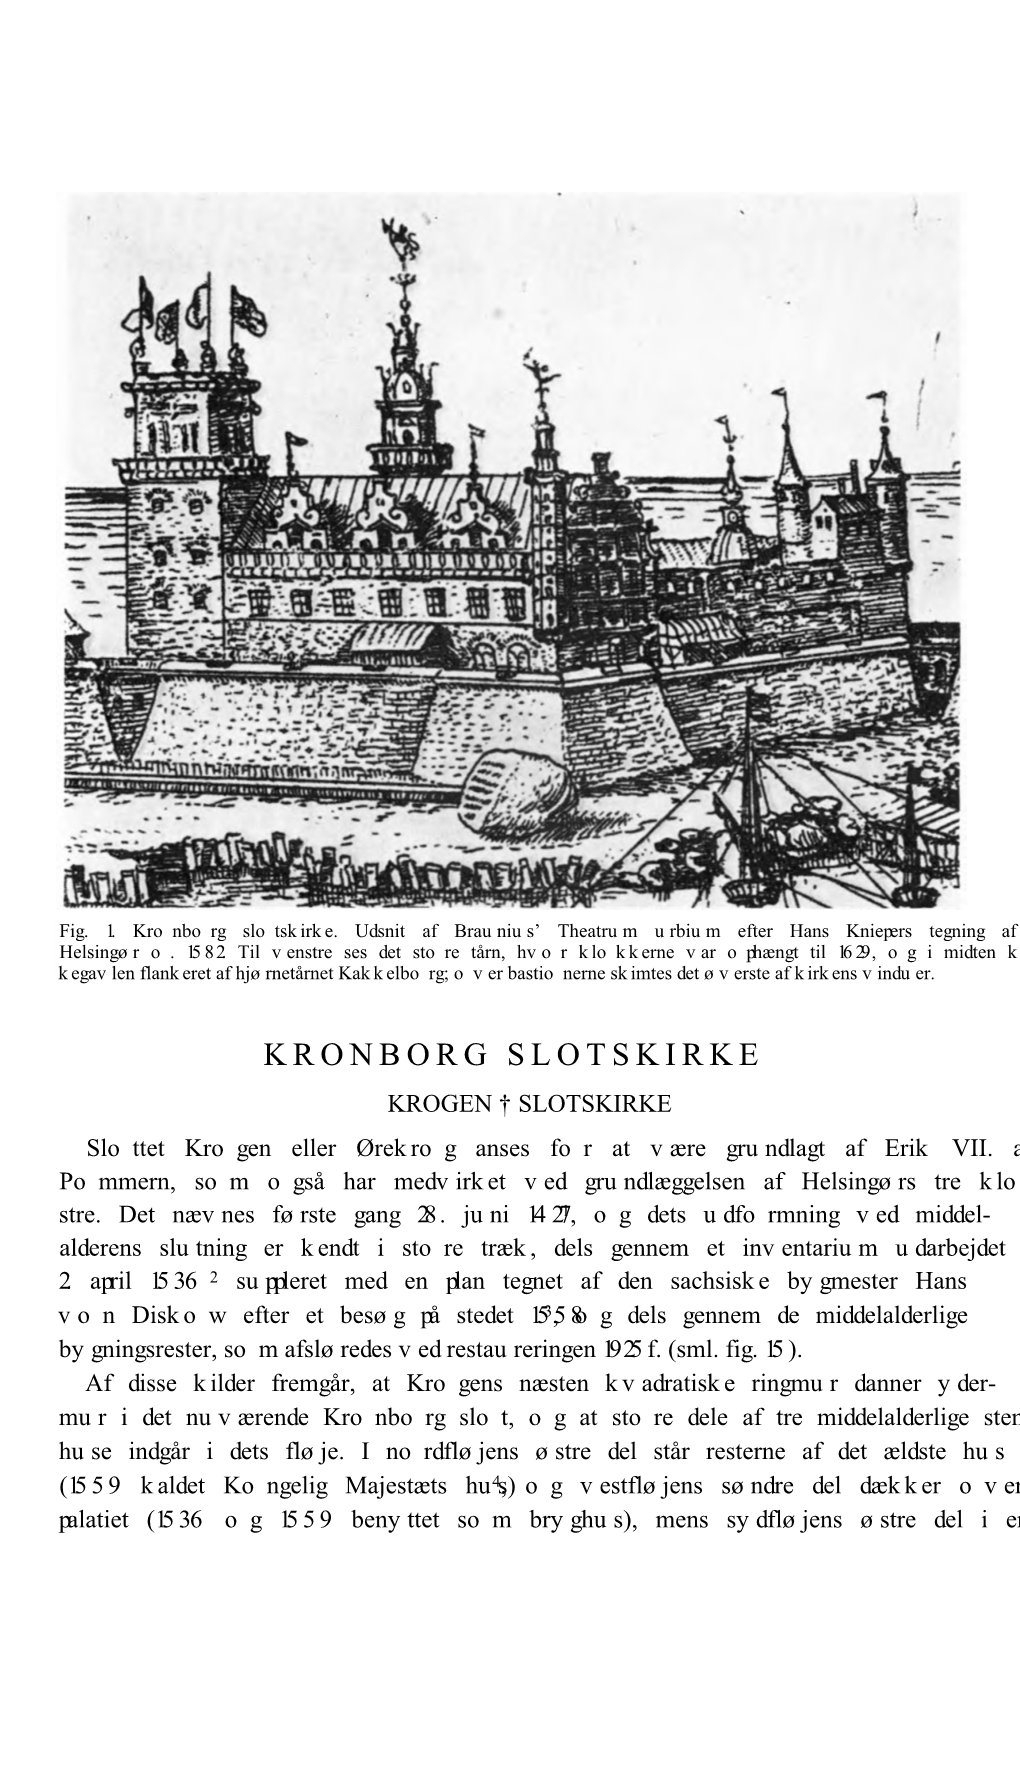 Kronborg Slotskirke